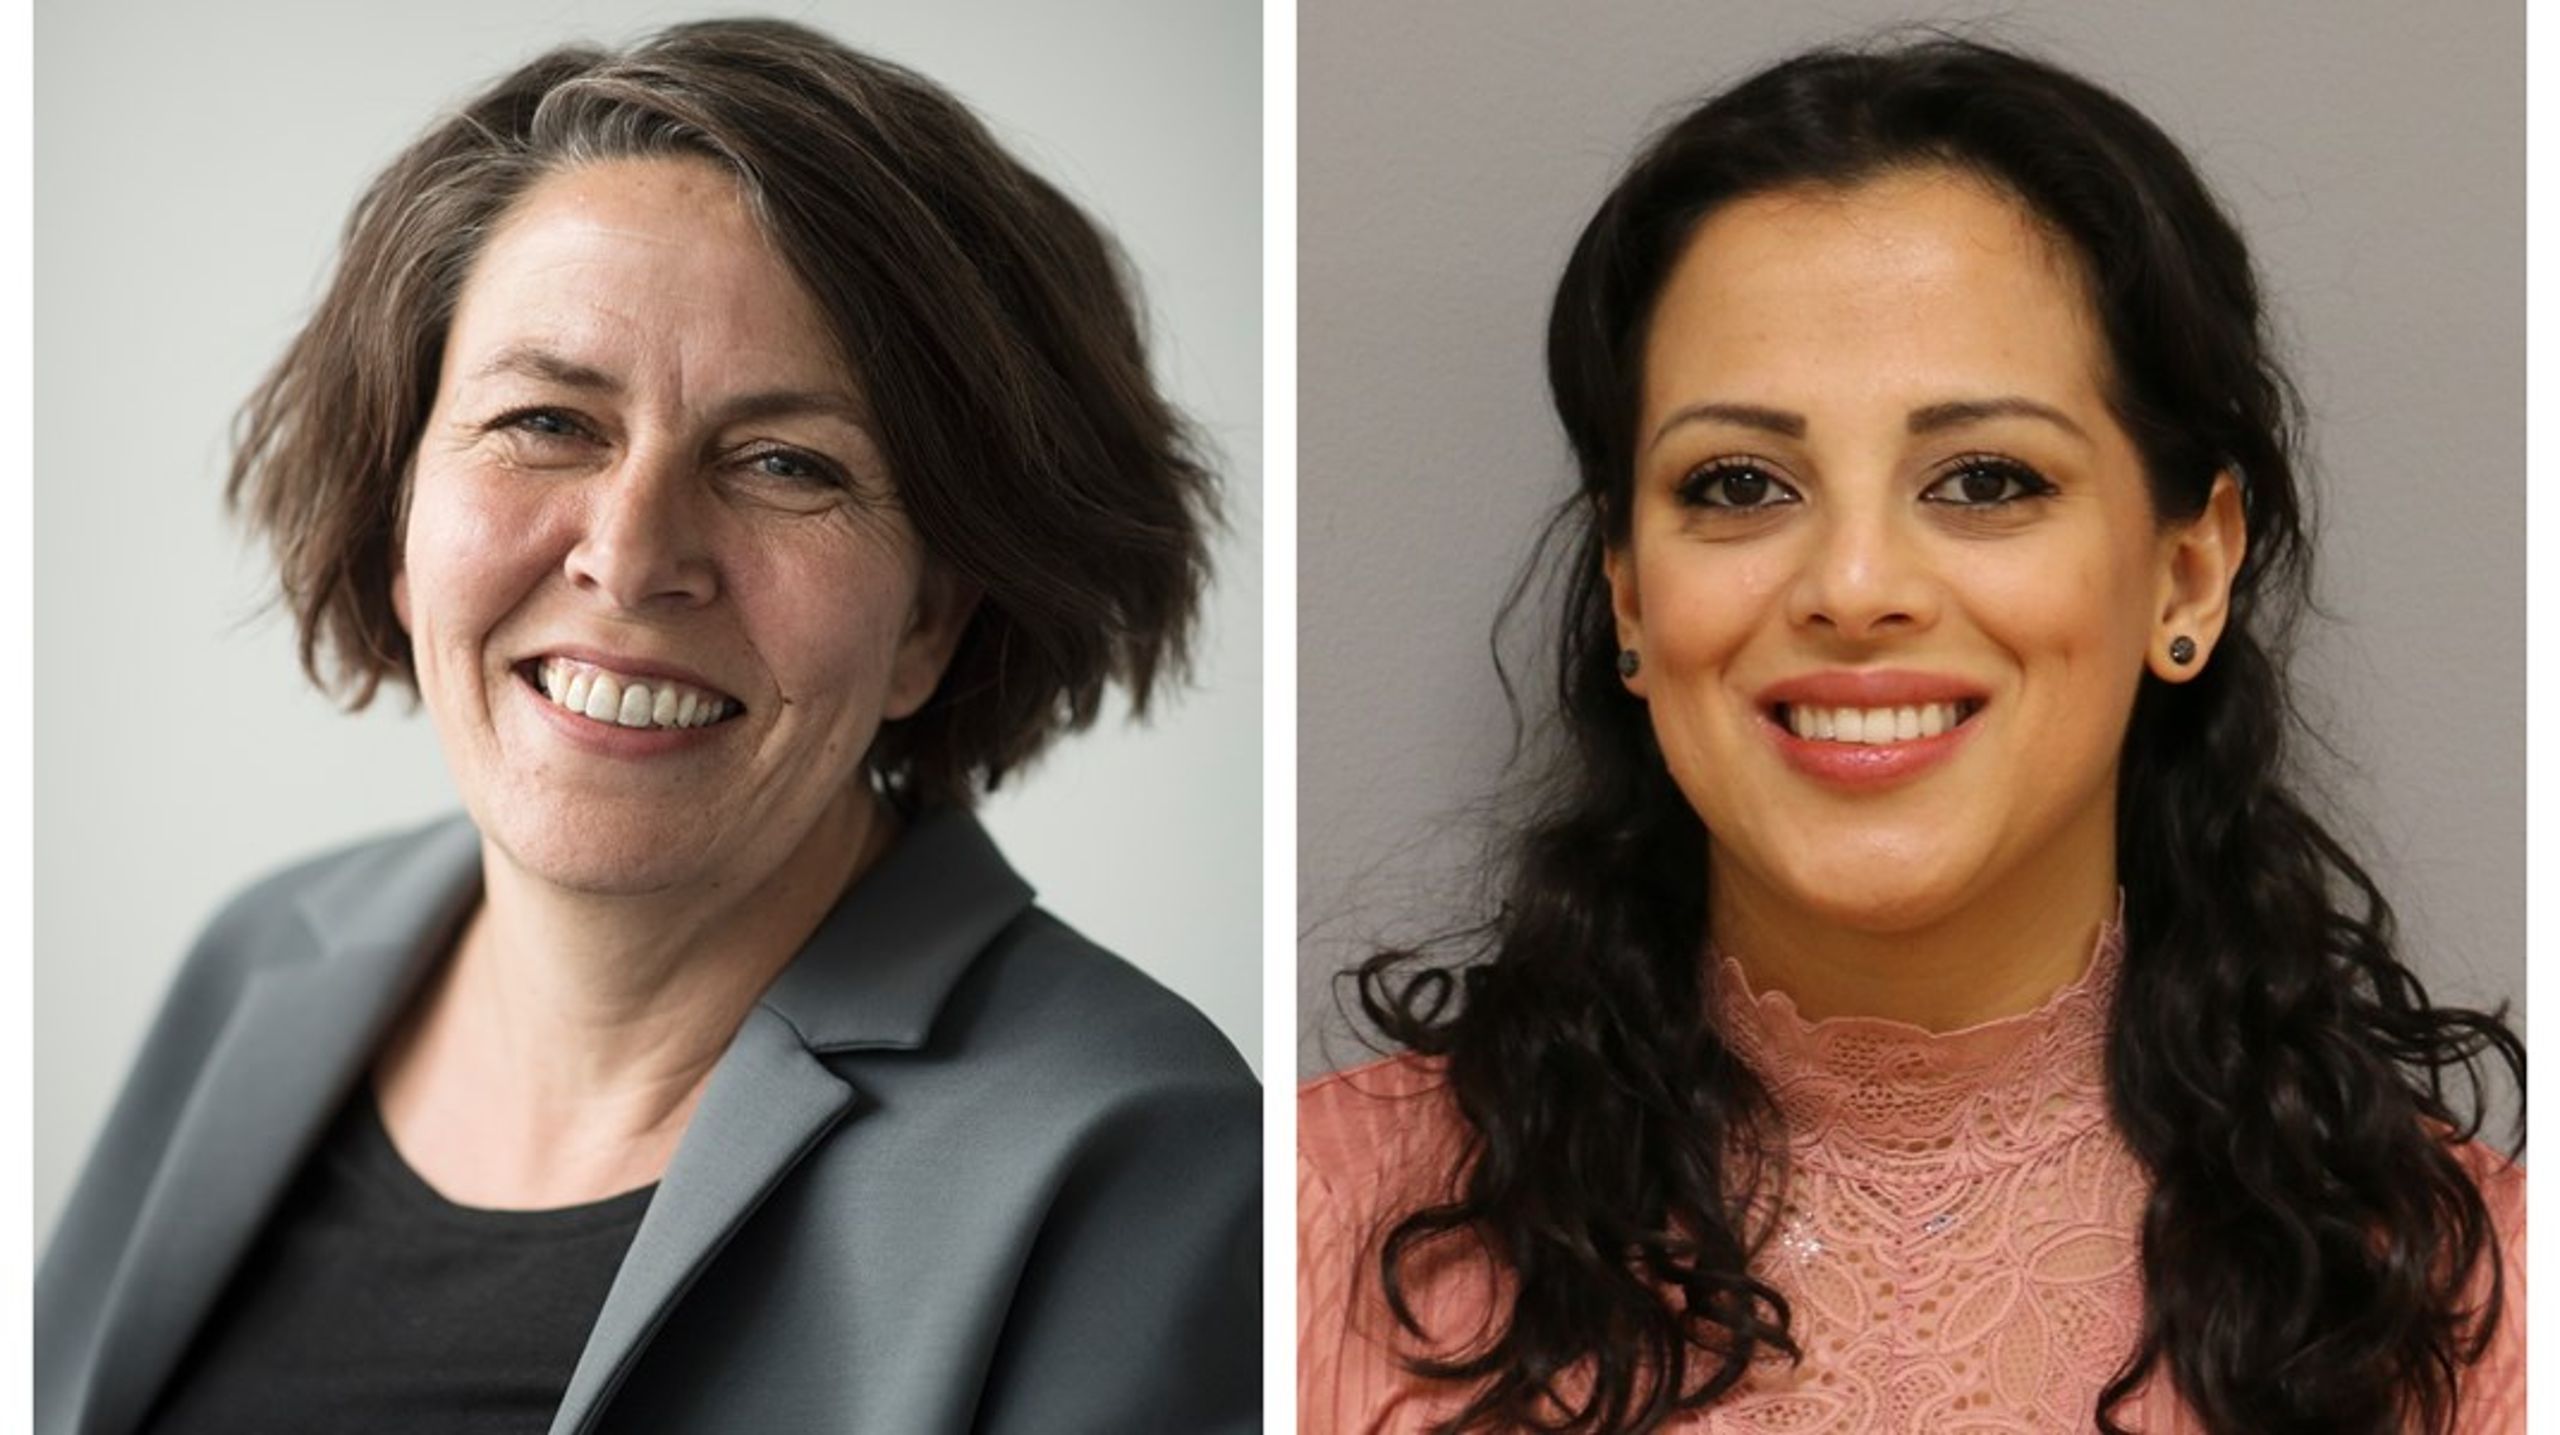 Det brune ligestillingsopgør vedrører ikke kun kvinderne selv, men os alle sammen, skriver Souha Al-Mersal og Henriette Laursen.